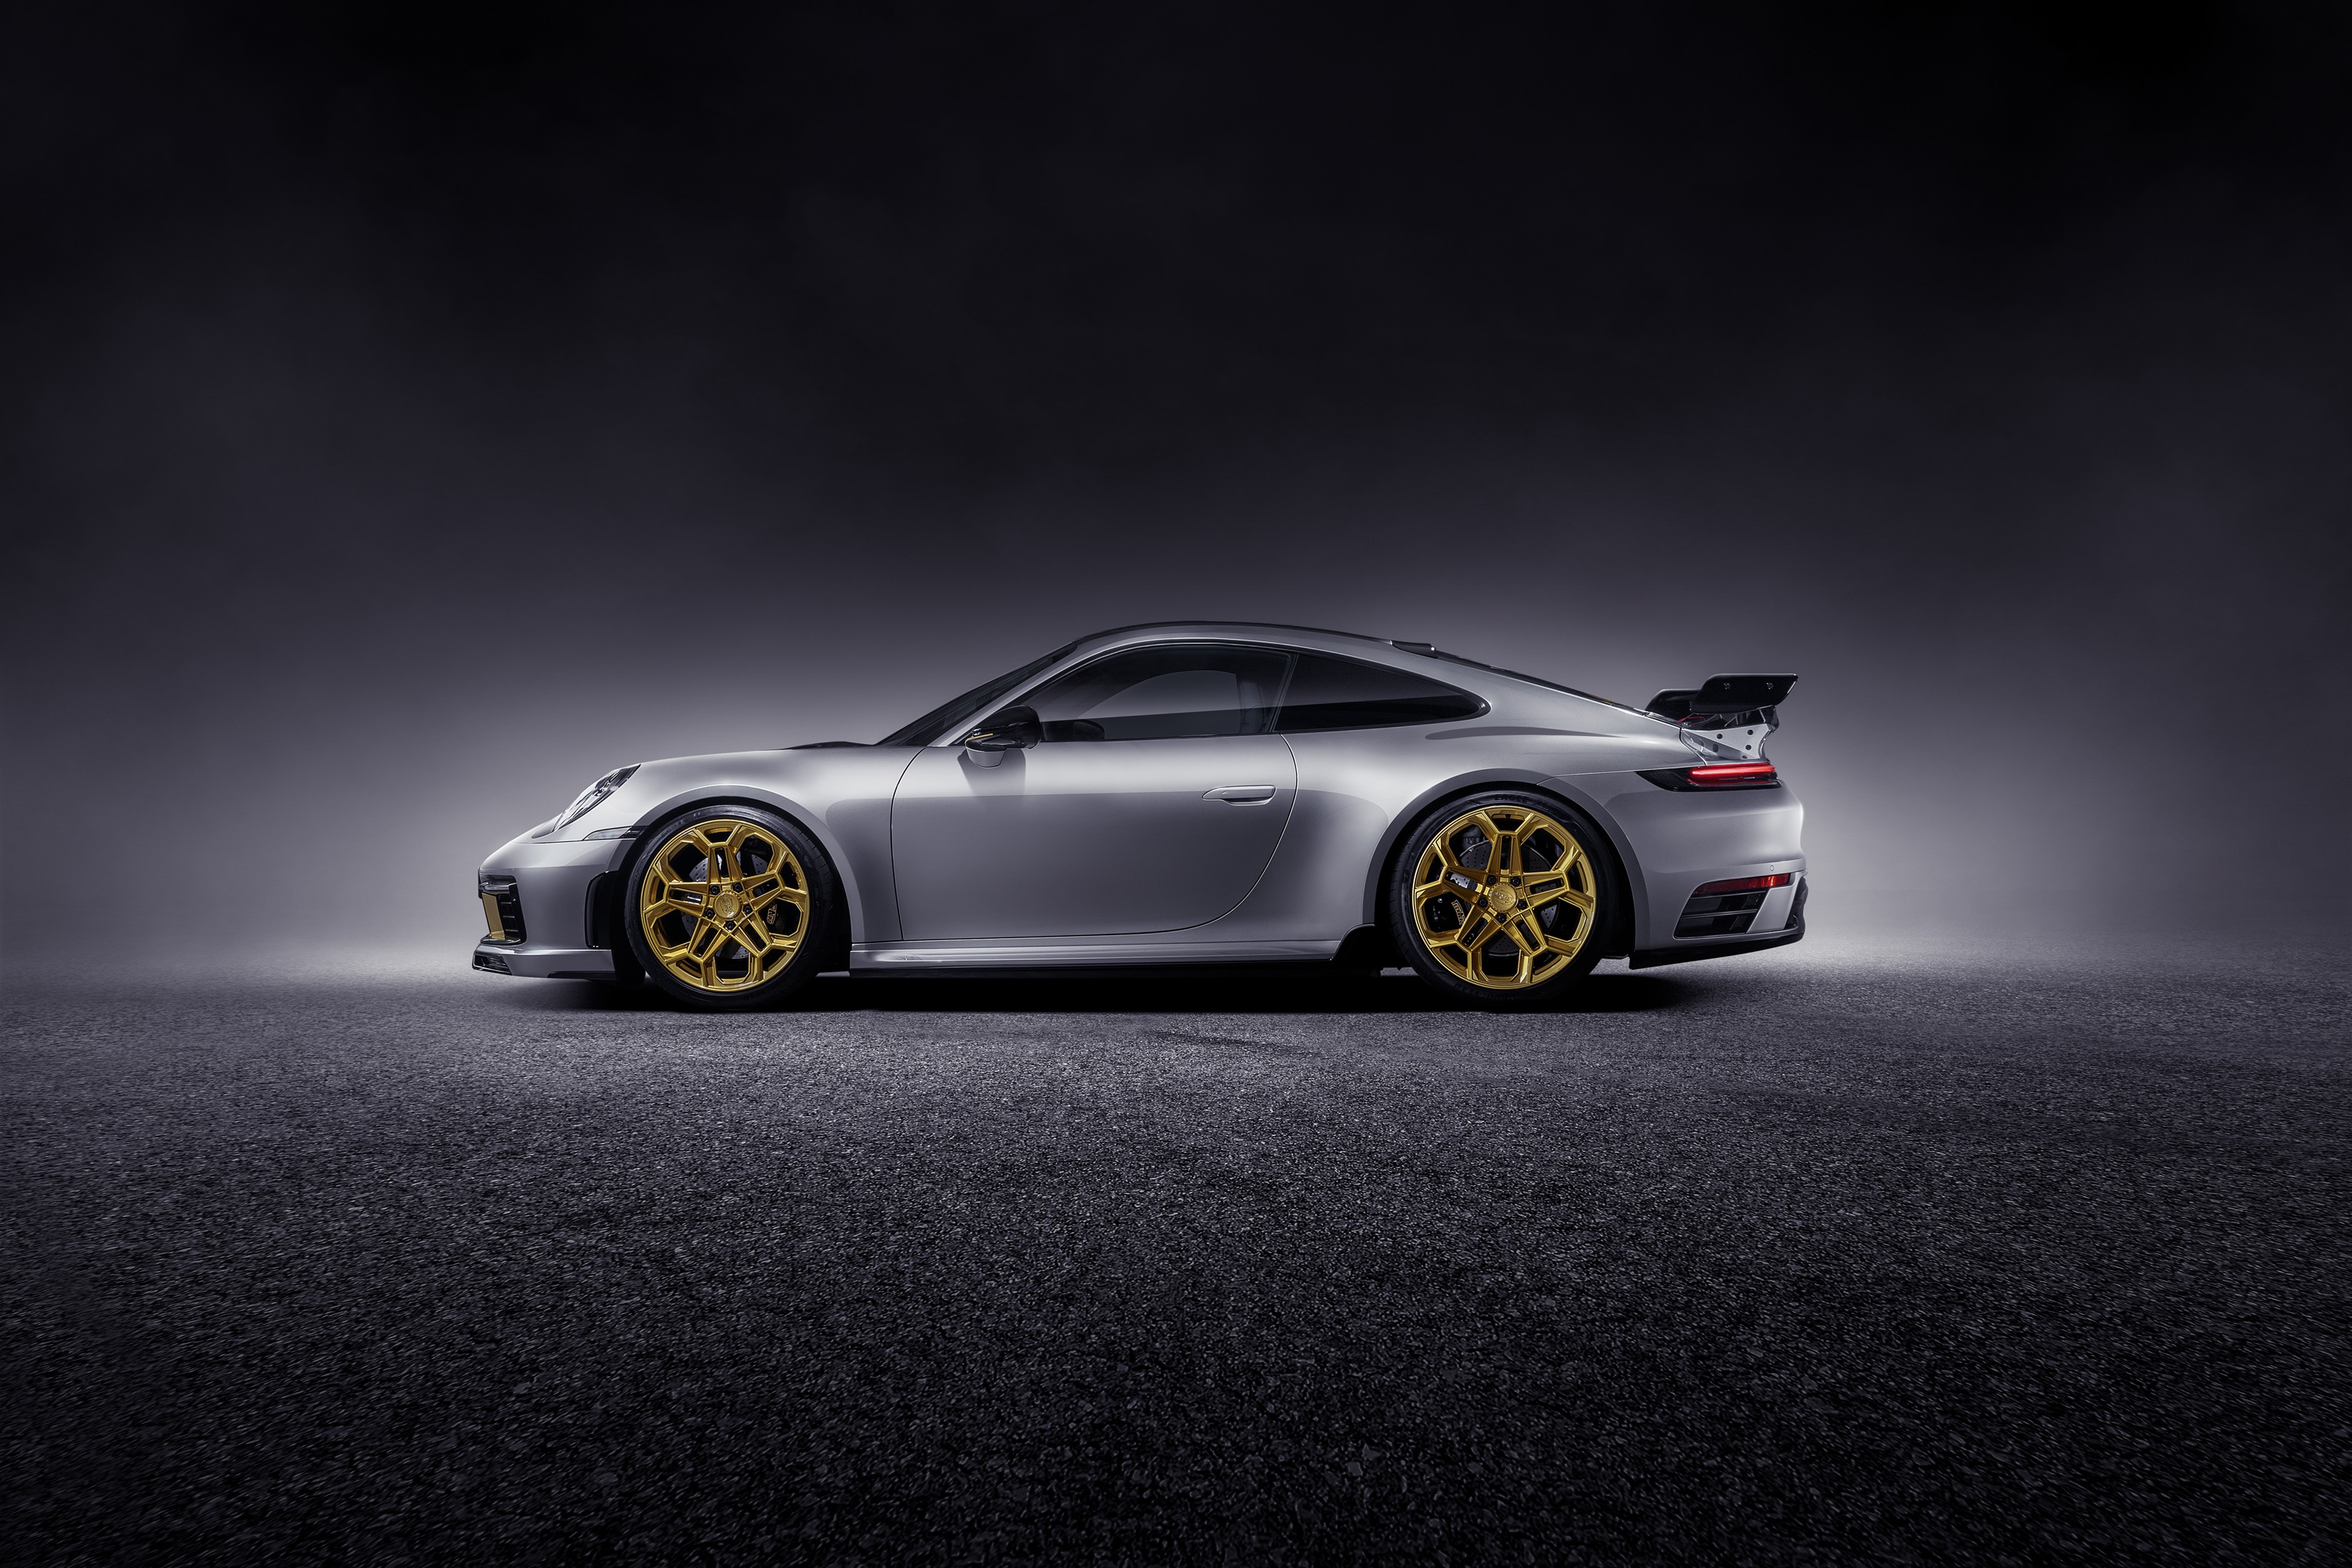 Download mobile wallpaper Porsche, Car, Porsche 911, Vehicles, Porsche 911 Carrera, Silver Car for free.